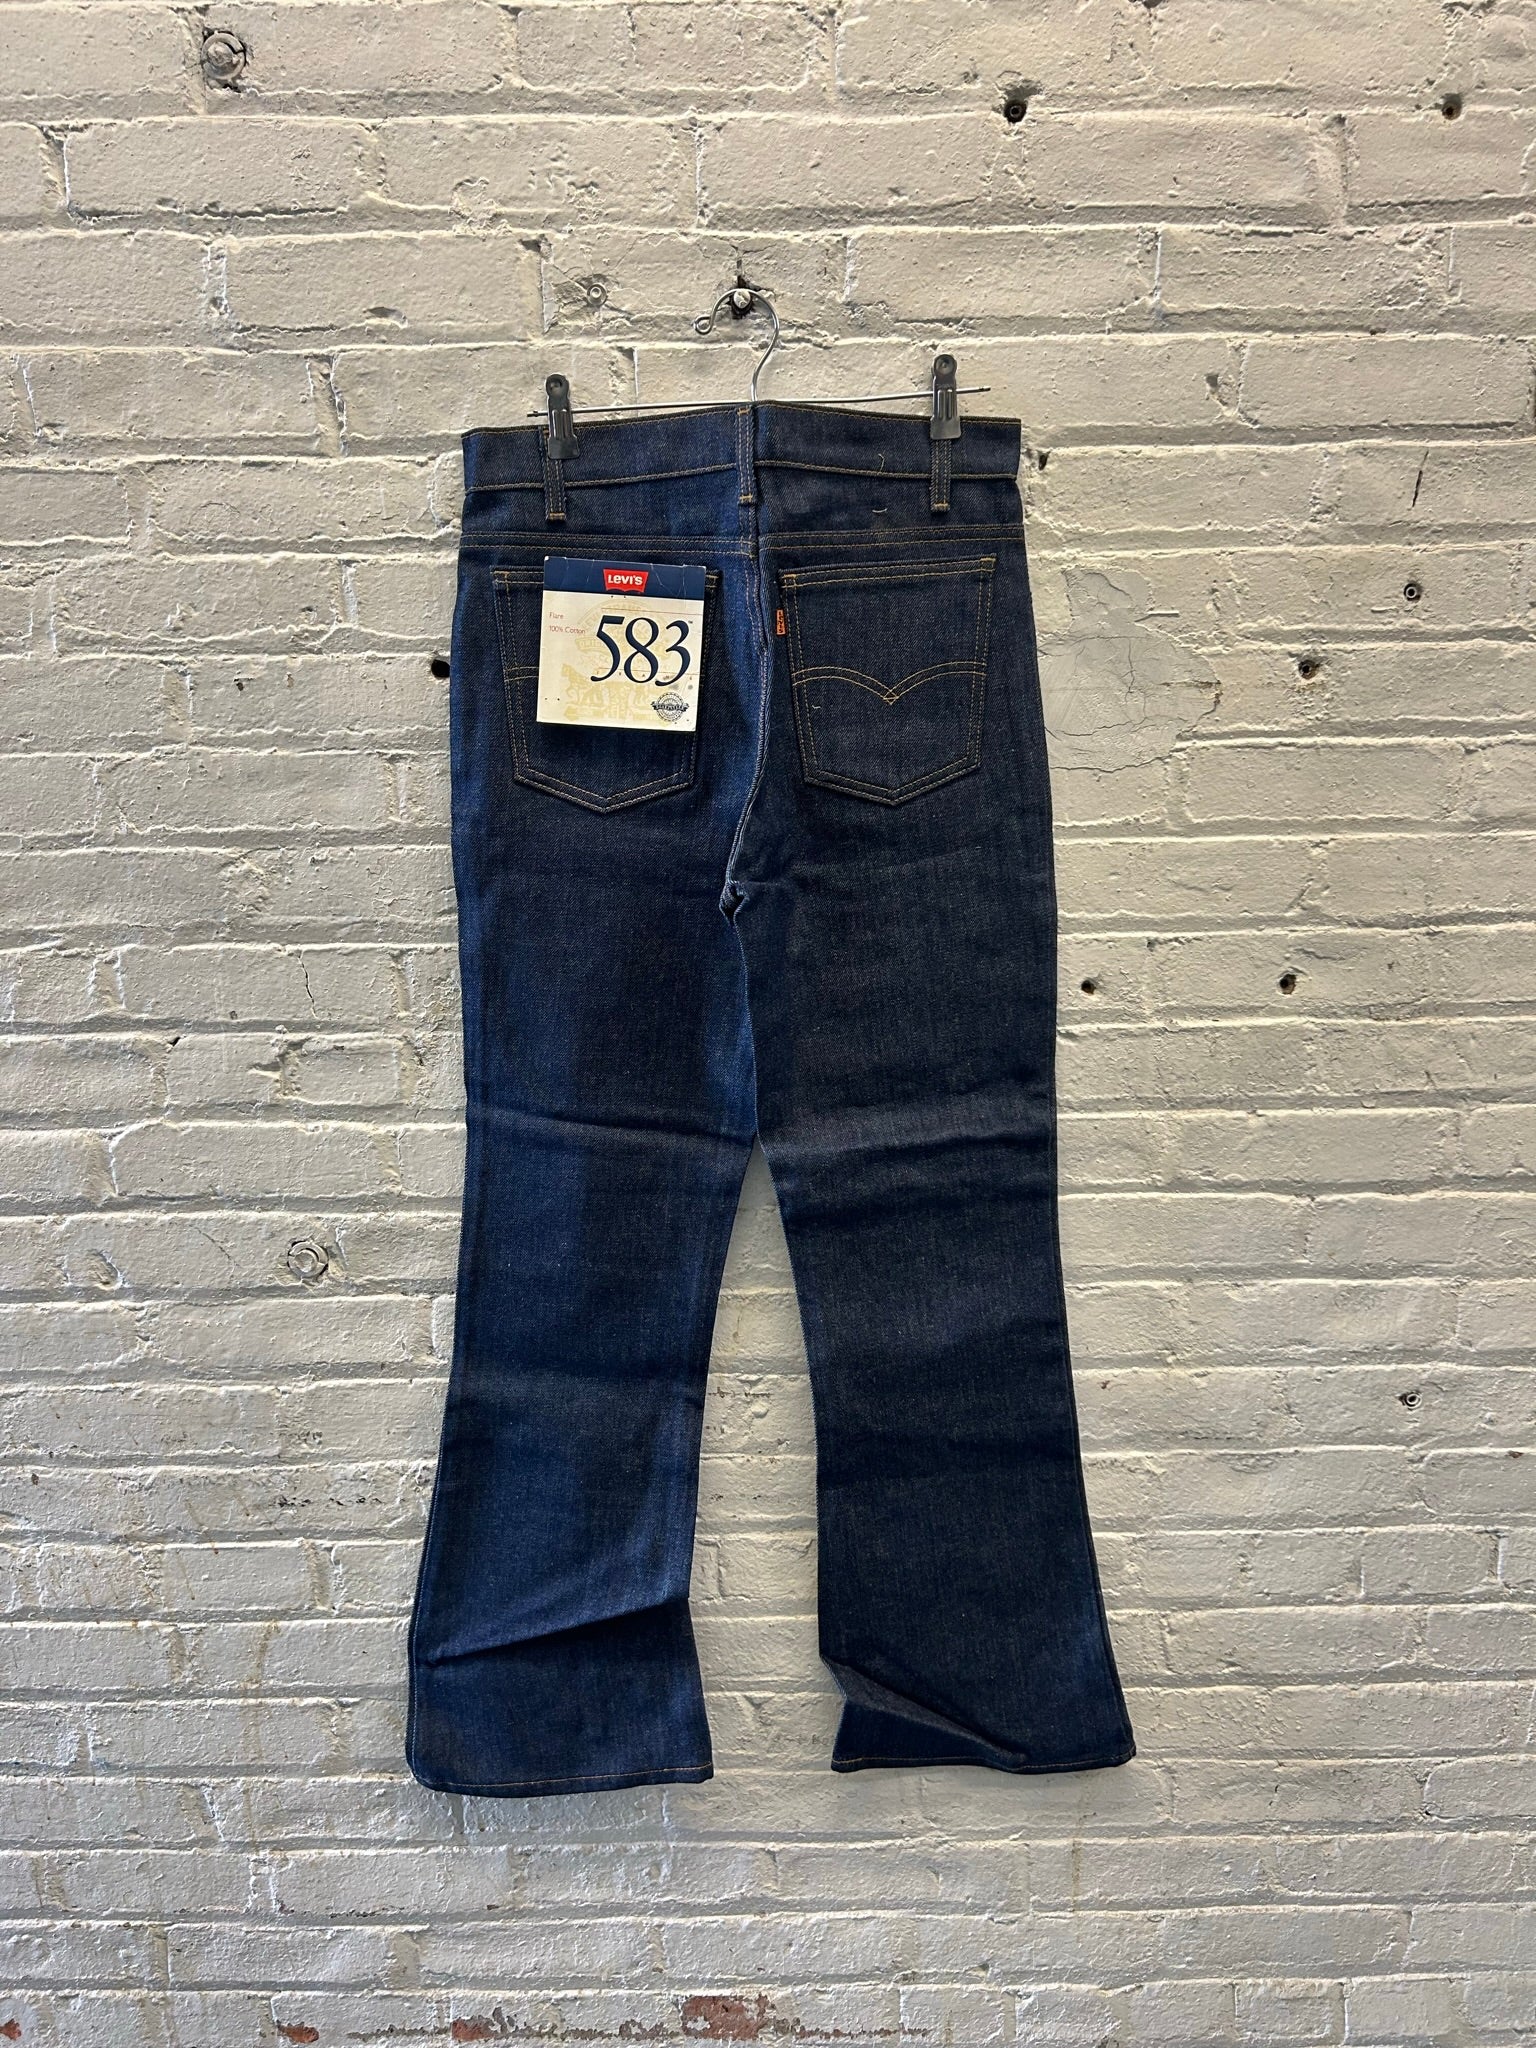 Levi's 583 Flare Jeans – Unique Market